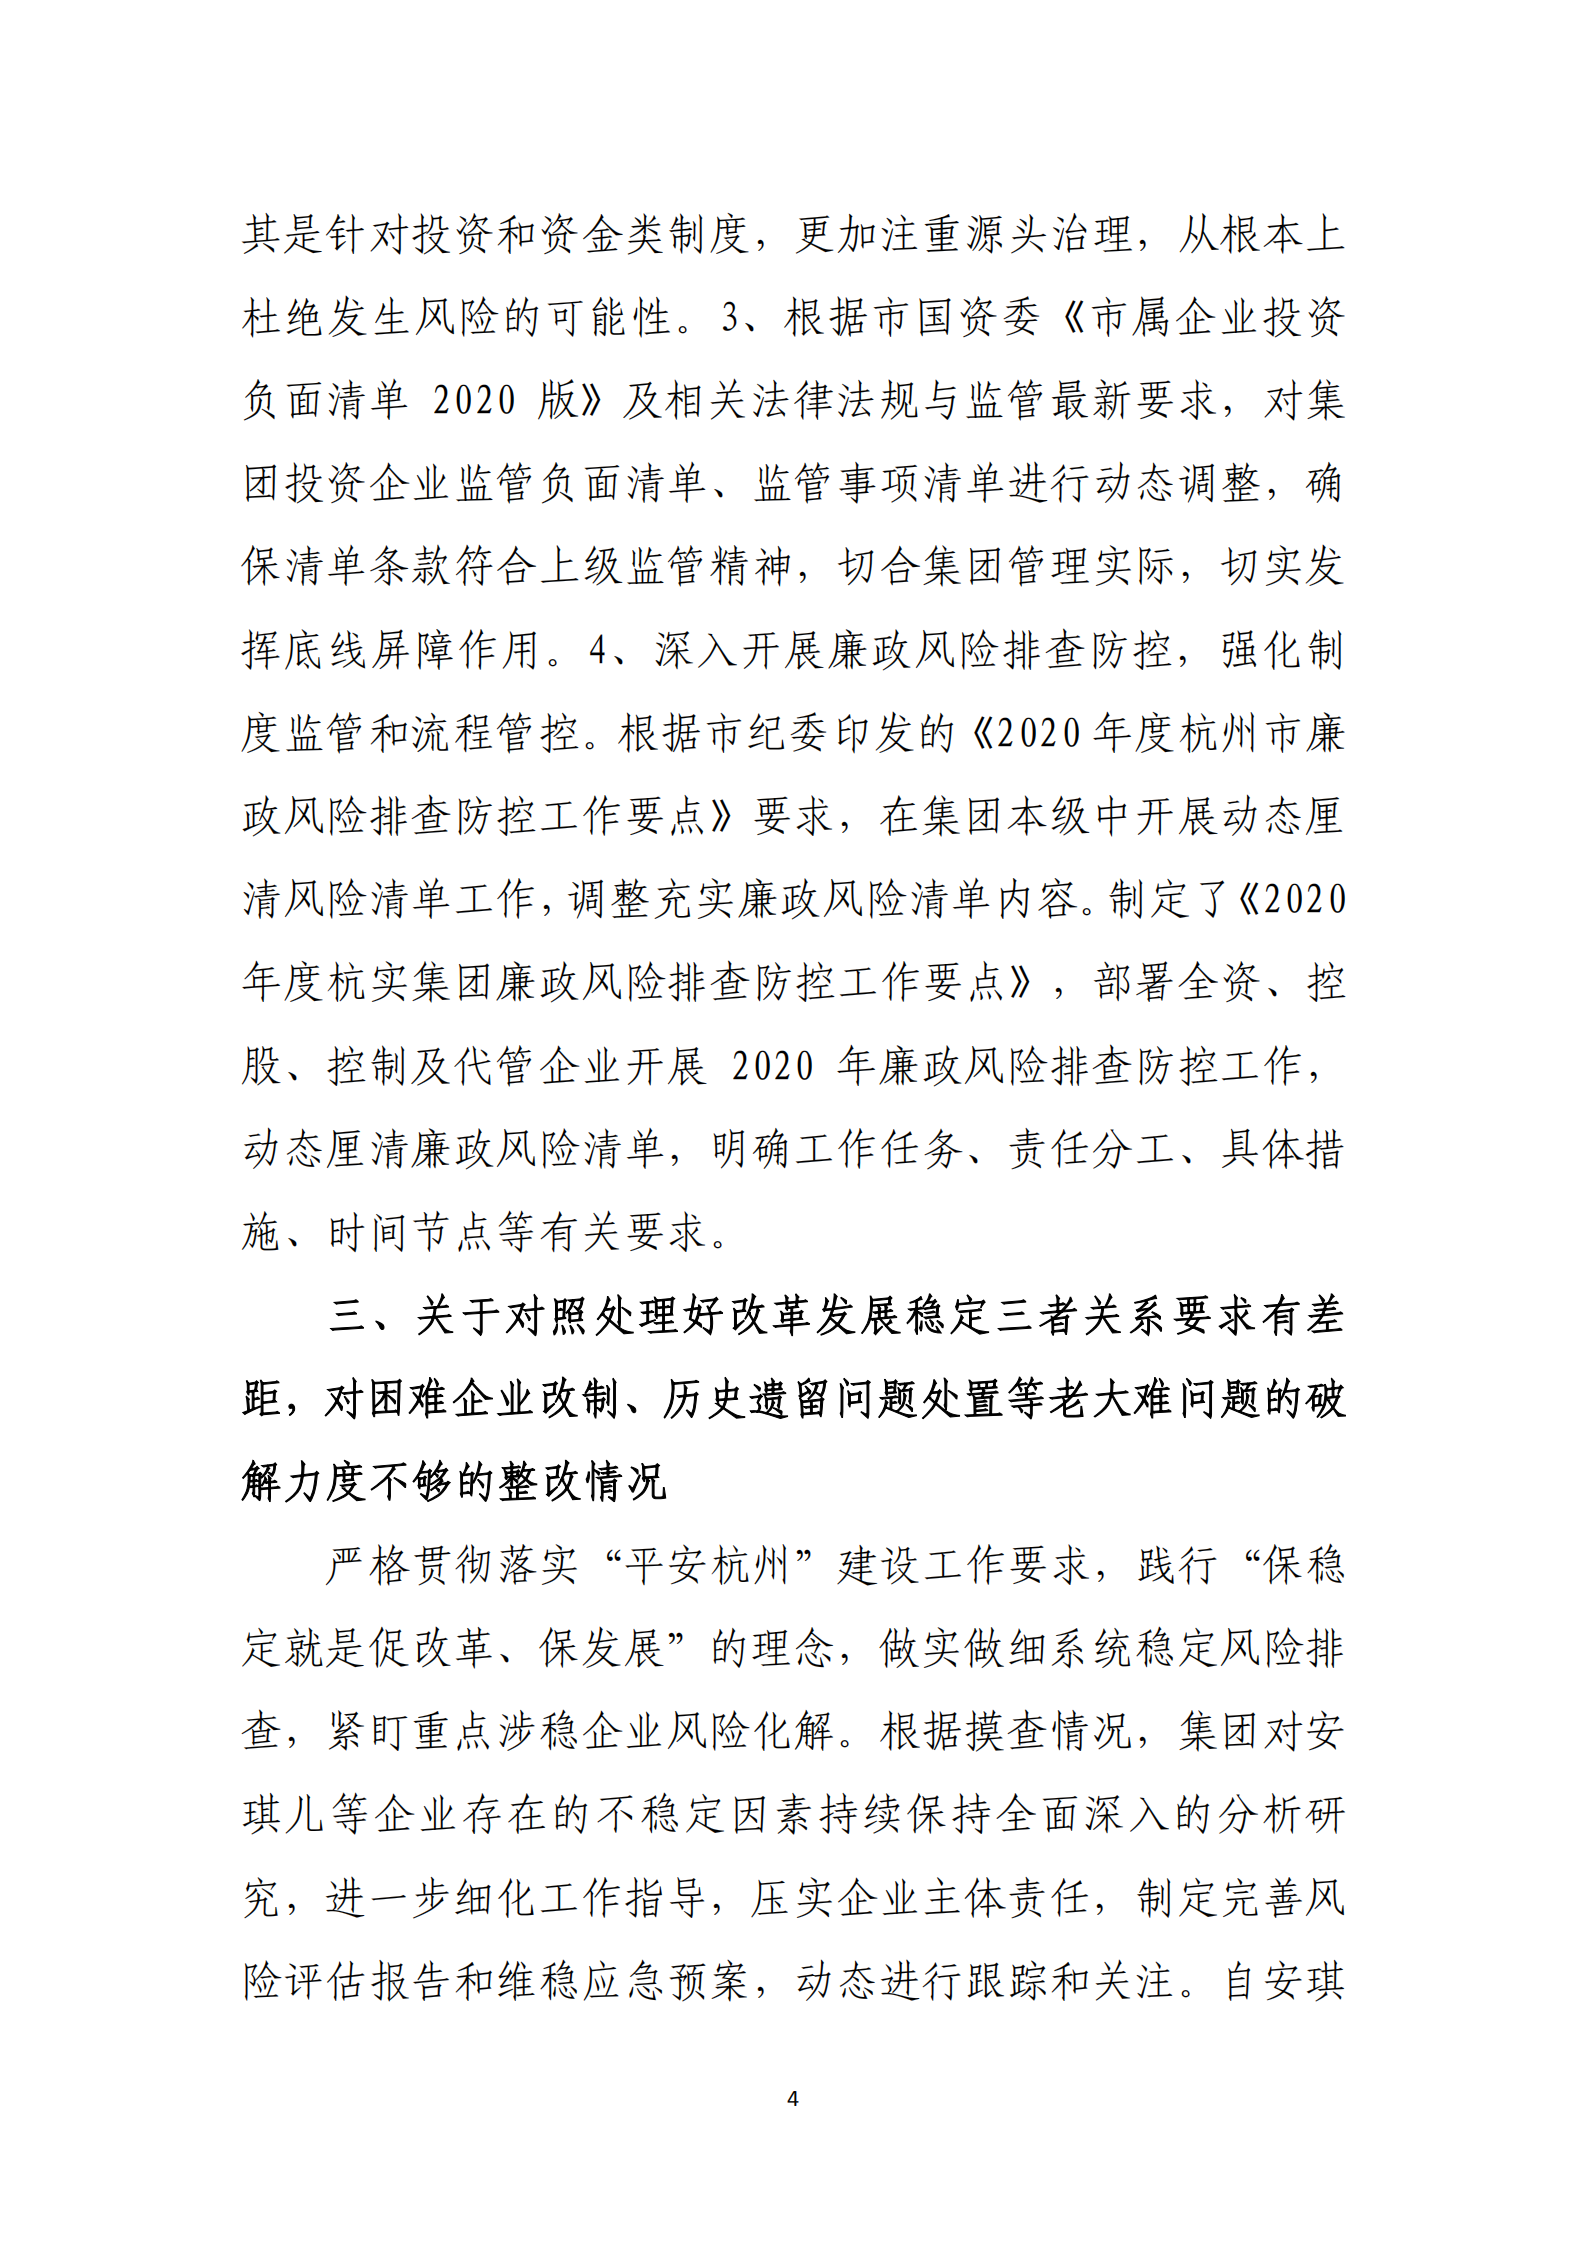 【体育365官方网站】中国有限公司党委关于巡察整改情况的通报_03.png